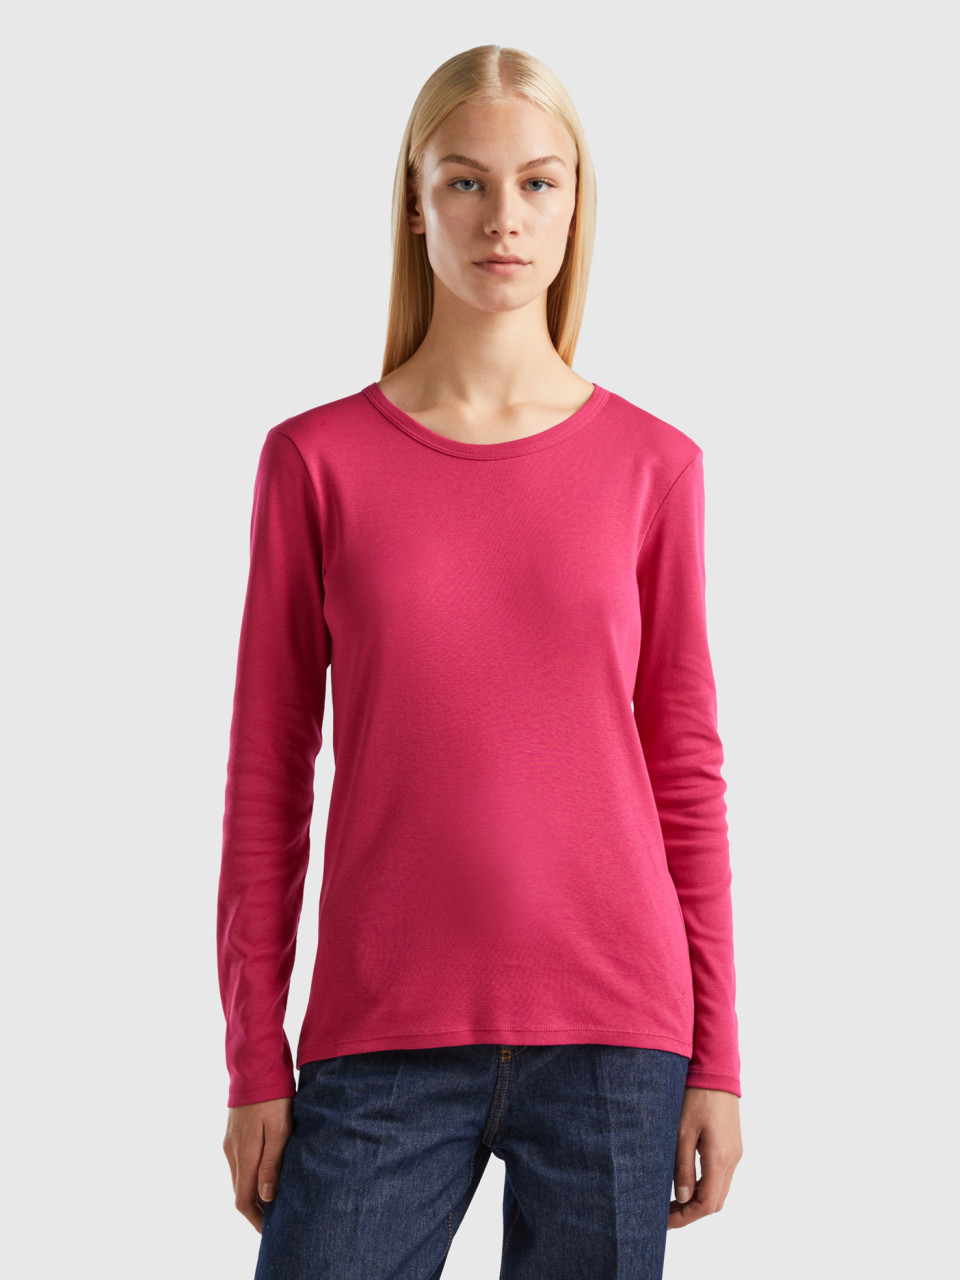 Benetton, Long Sleeve Pure Cotton T-shirt, Cyclamen, Women